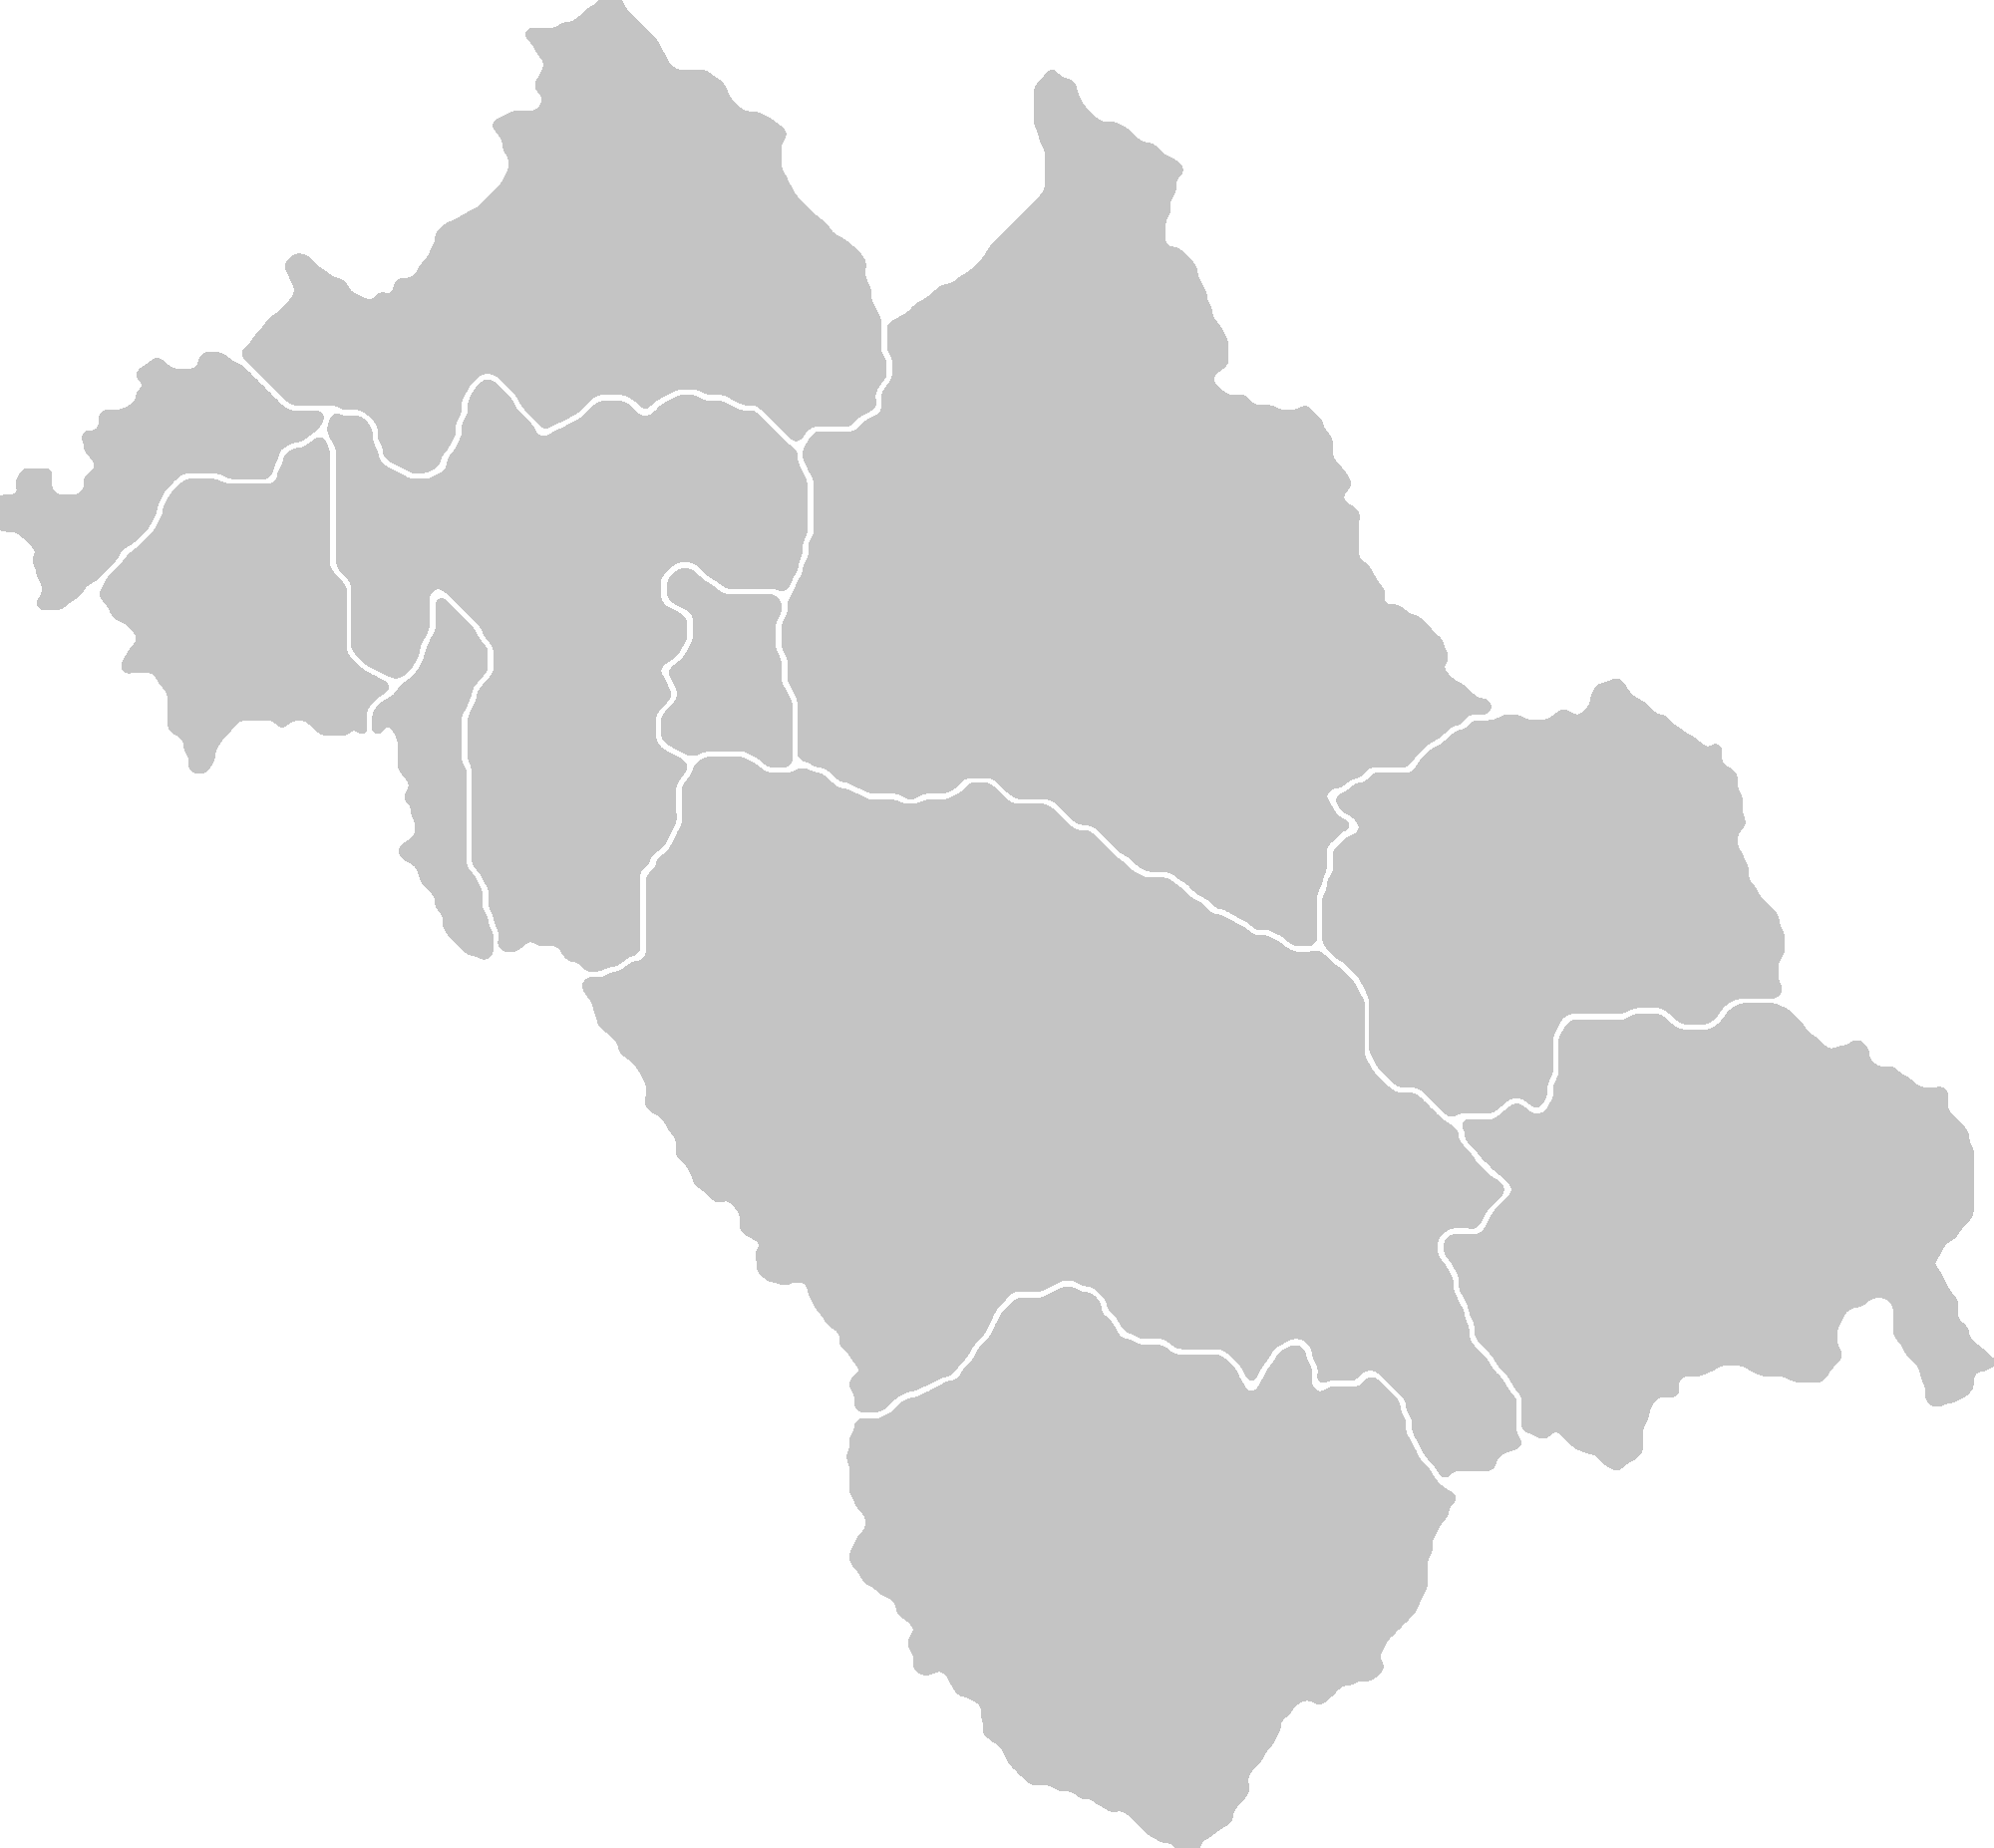 Mapa województwa